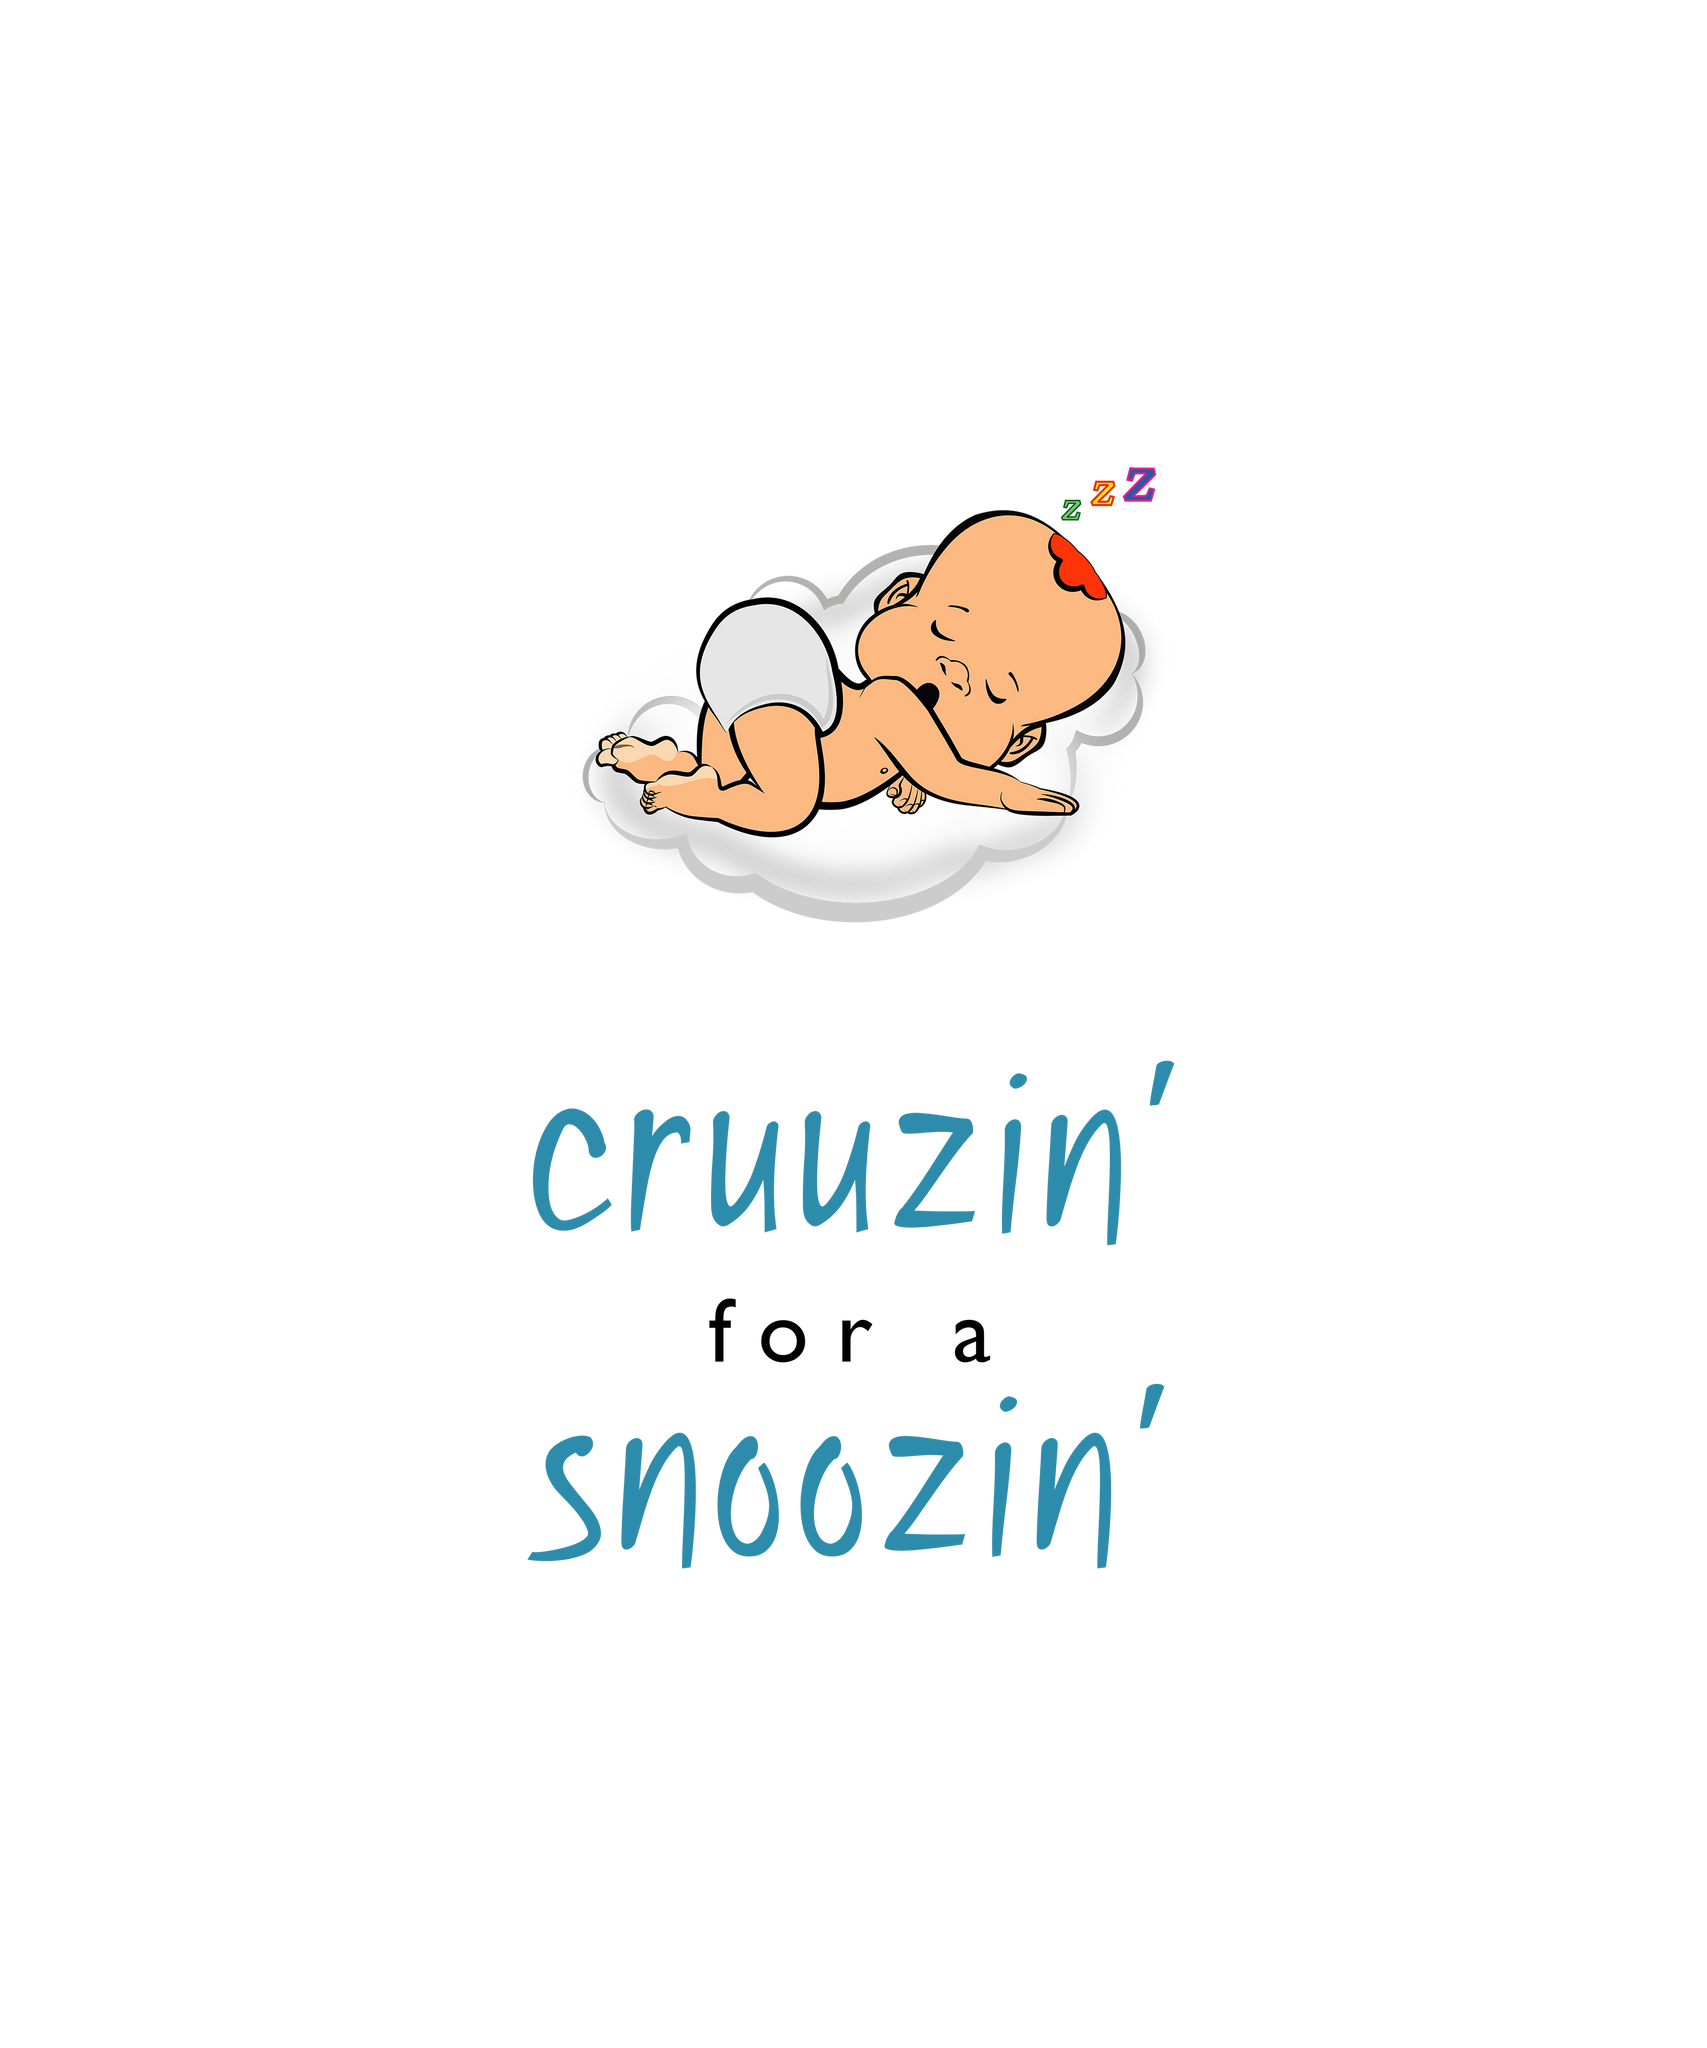 PBCZ0689_cruuzin' for a snoozin'_boy_2